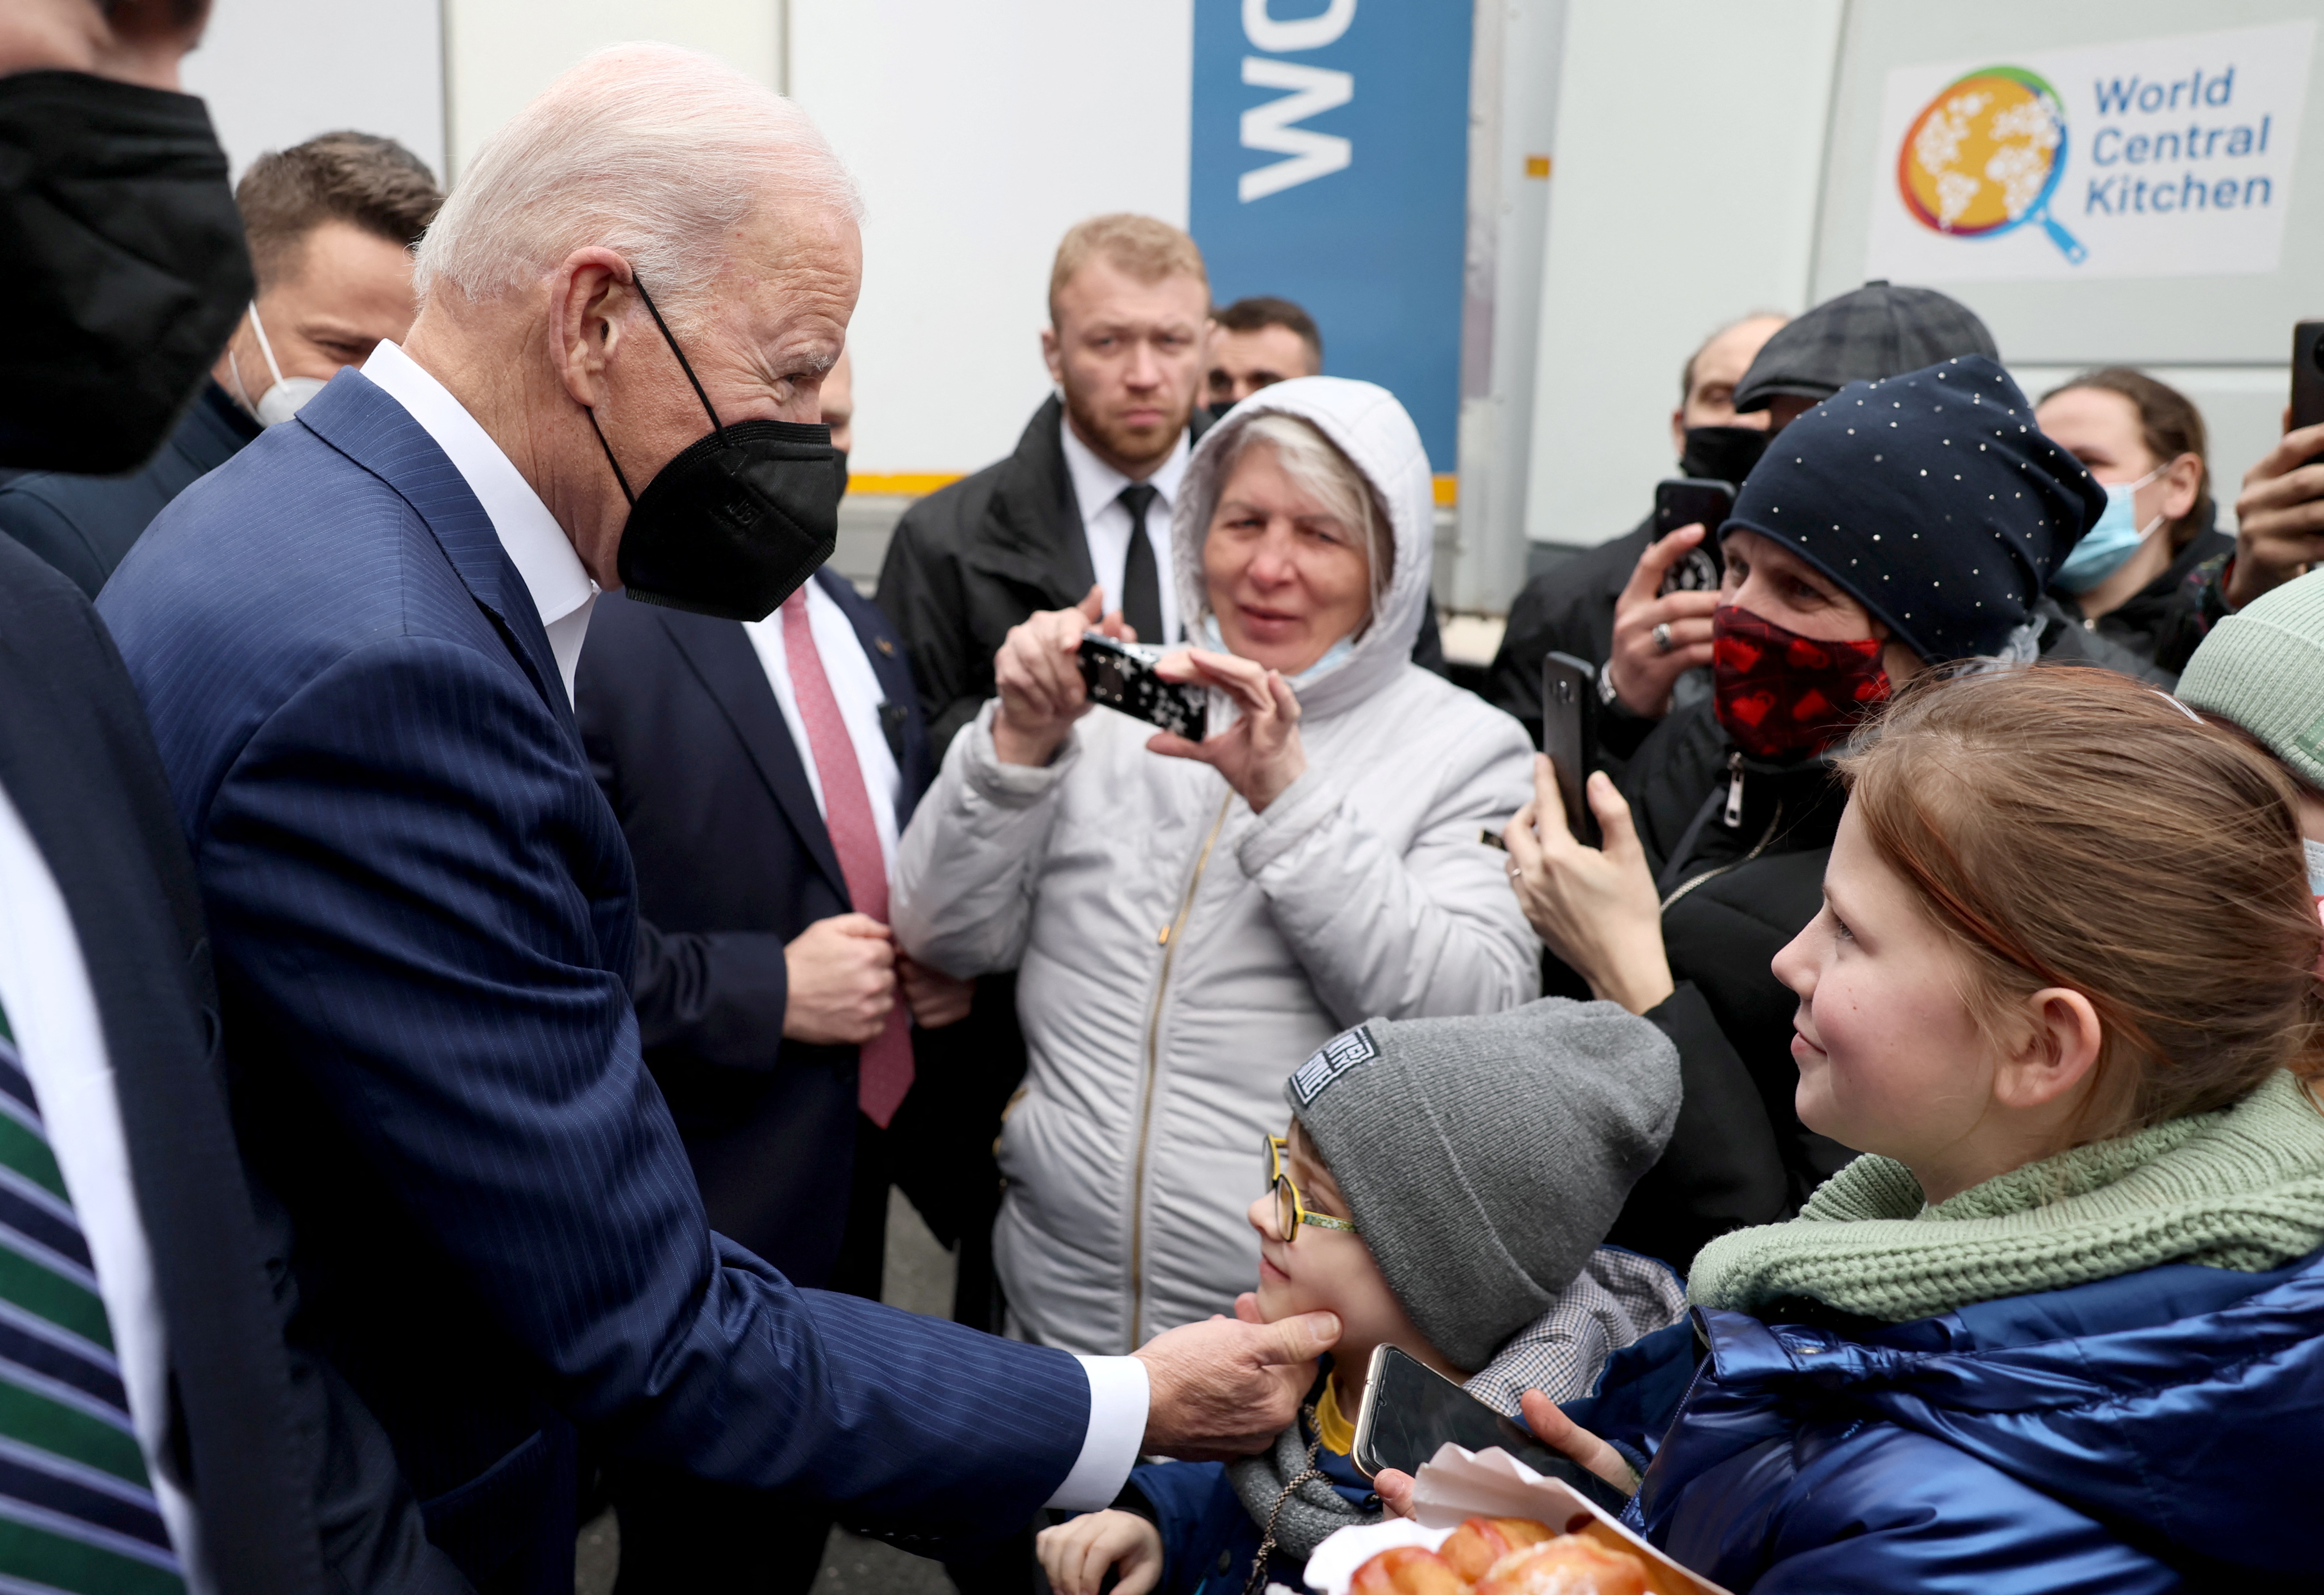 Biden with Ukrainian refugees (Reuters/Evelyn Hochstein)